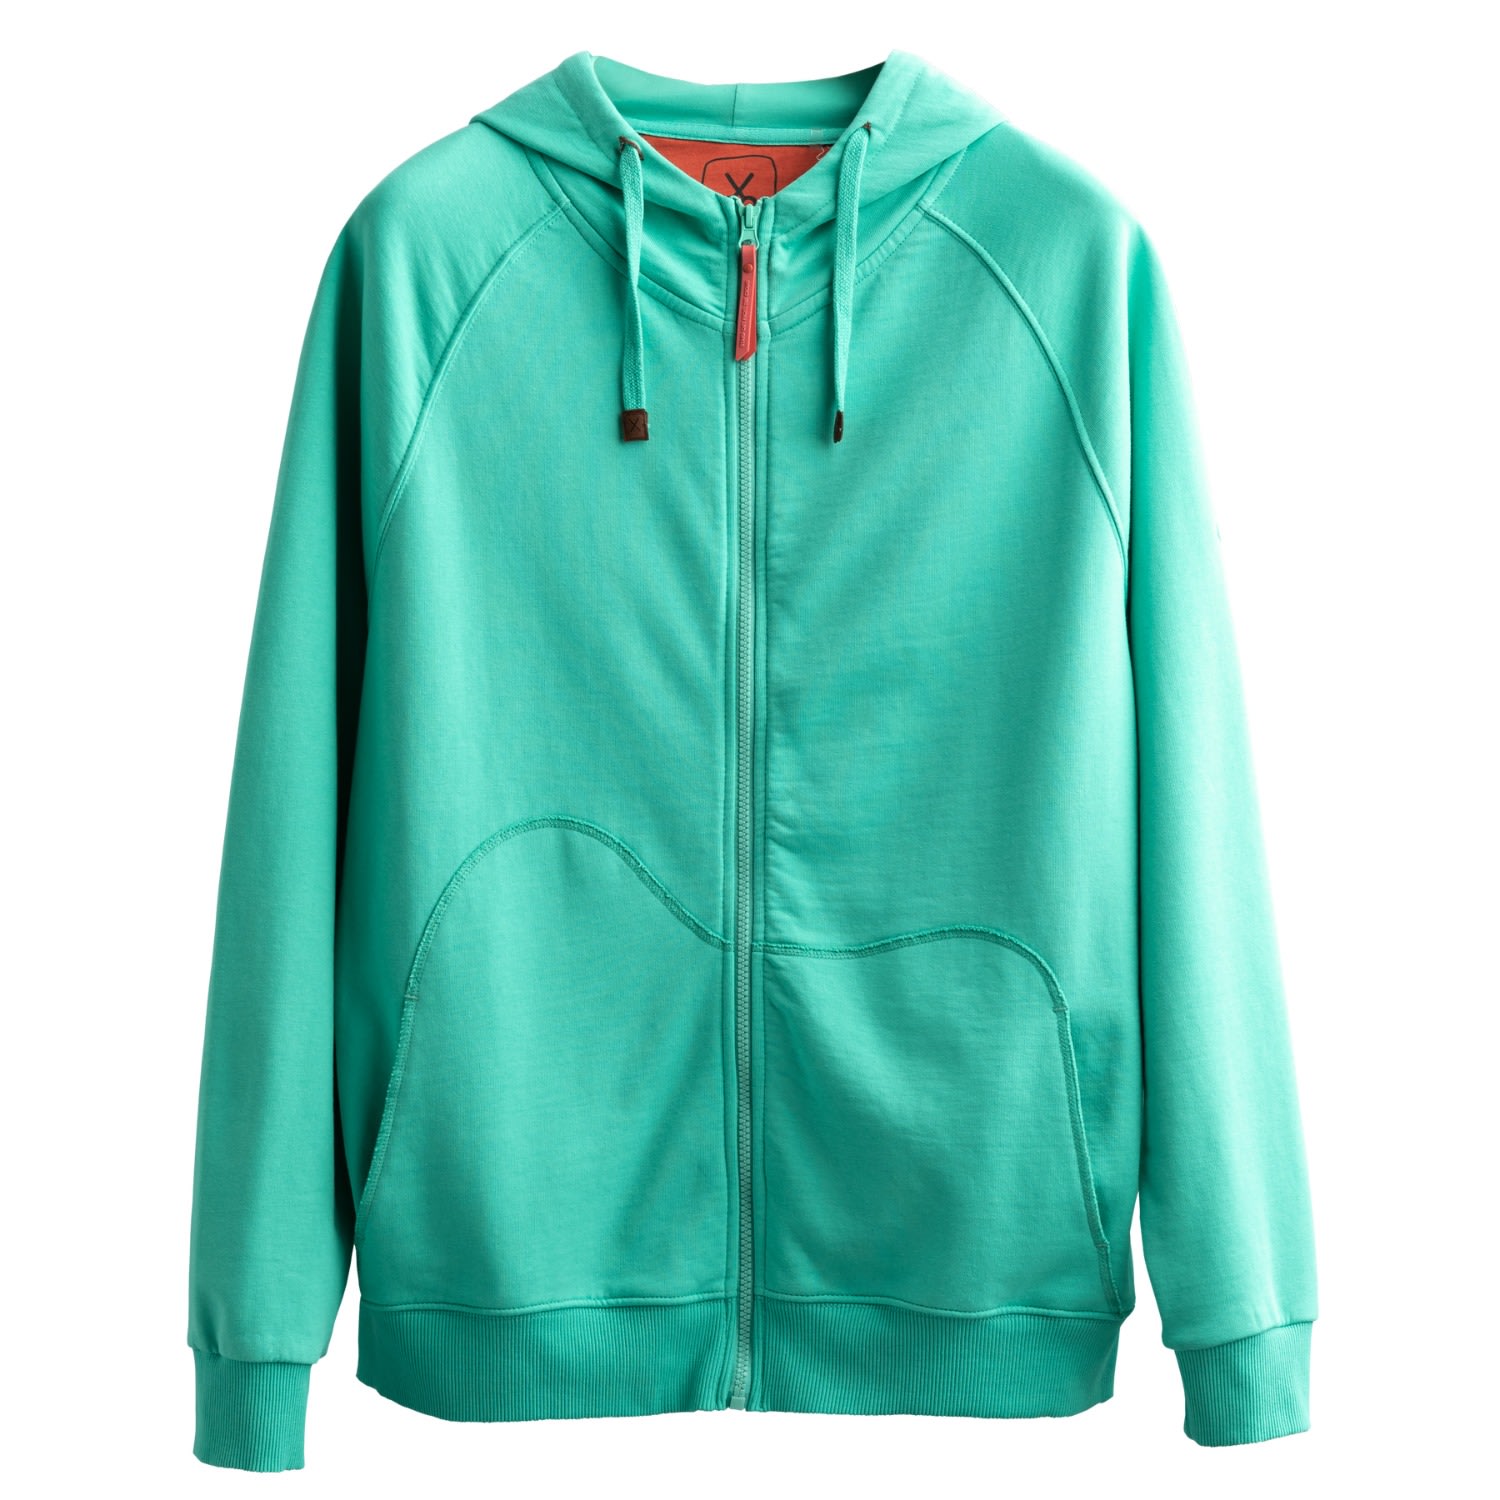 Men's Green Unisex Design Zip Hoodie Sweatshirt - Zipper - Turquois Small KAFT